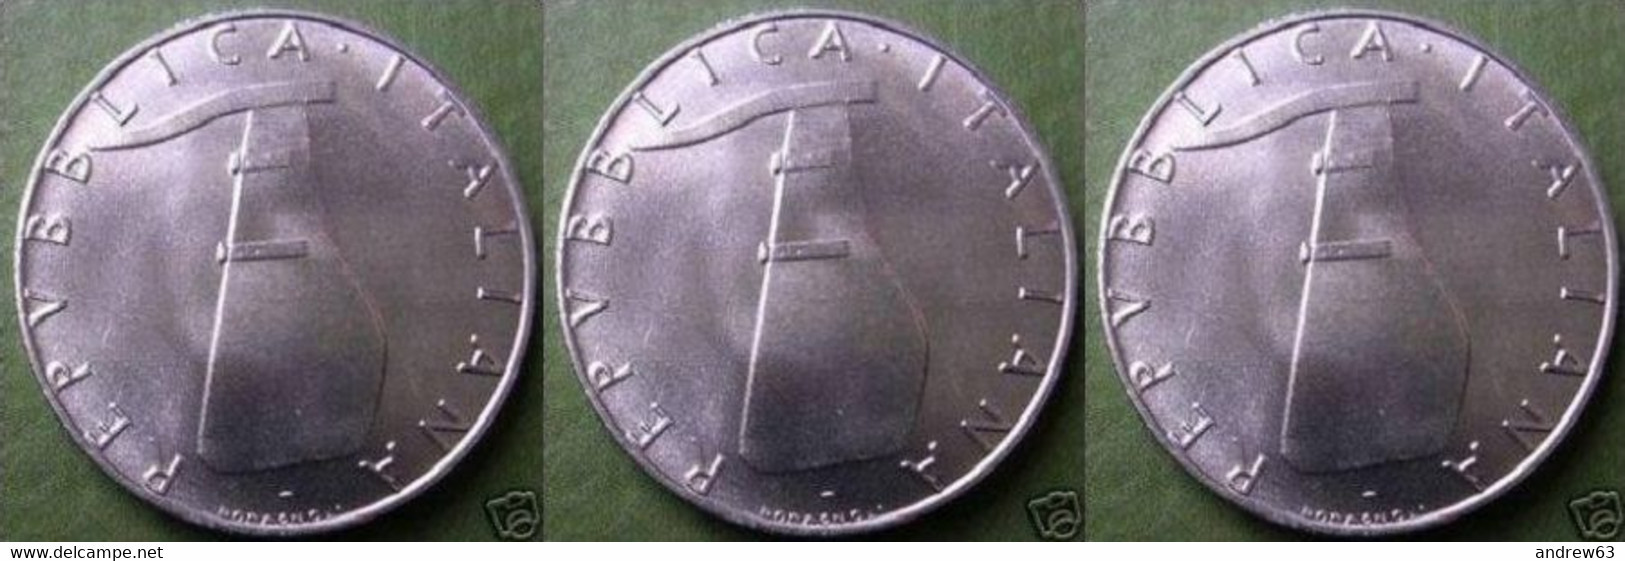 ITALIA - Lire 5 1992 - FDC/Unc Da Rotolino/from Roll 3 Monete/3 Coins - 5 Lire